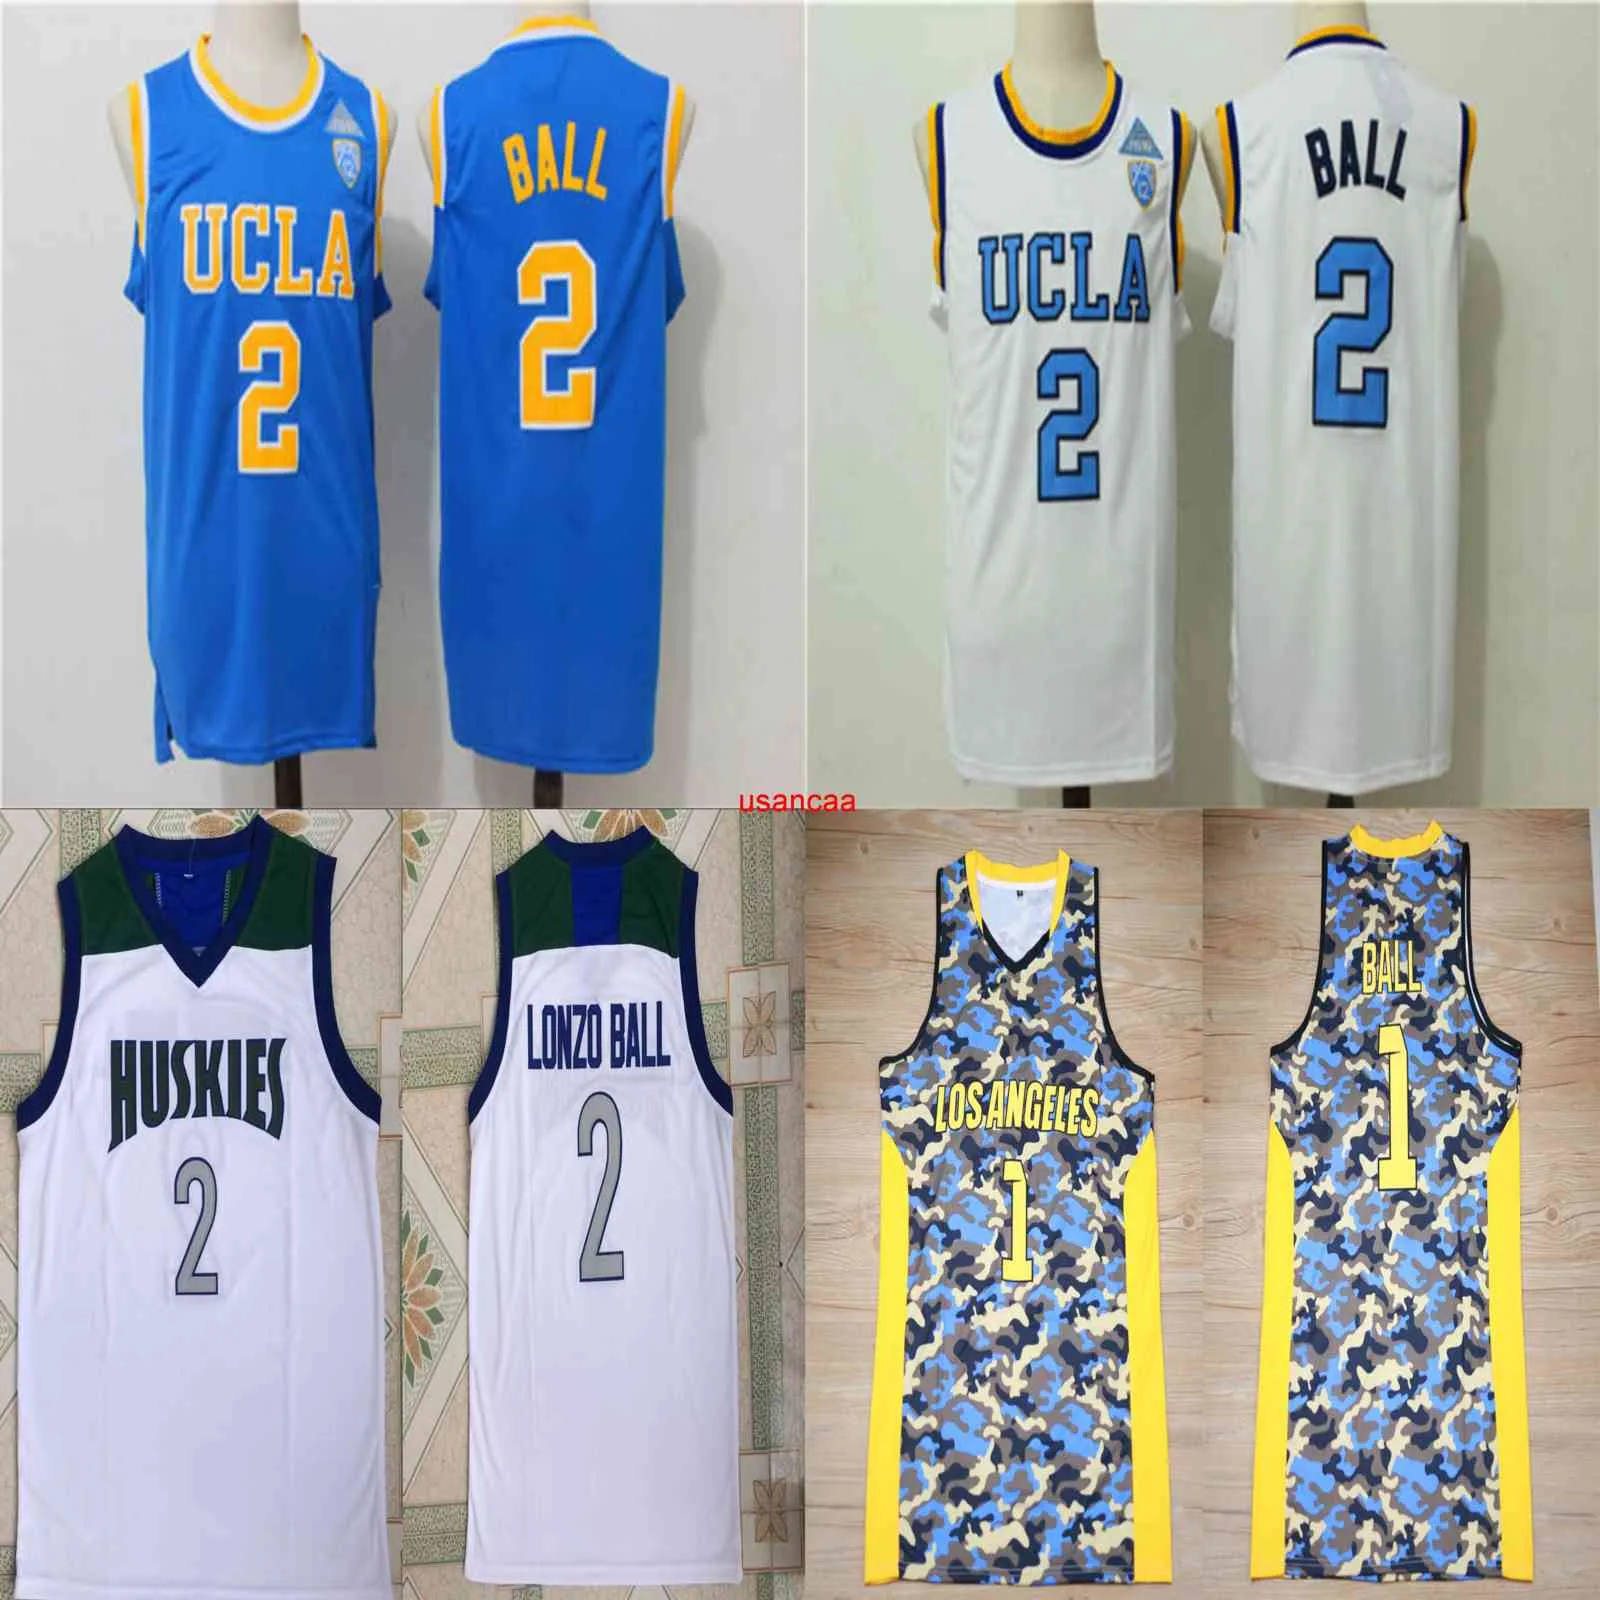 1 Lonzo Ball Basketball Jersey #2 UCLA Bruins College Jerseys Stitched Light Blue White Chino Hills Huskies High School Shirts